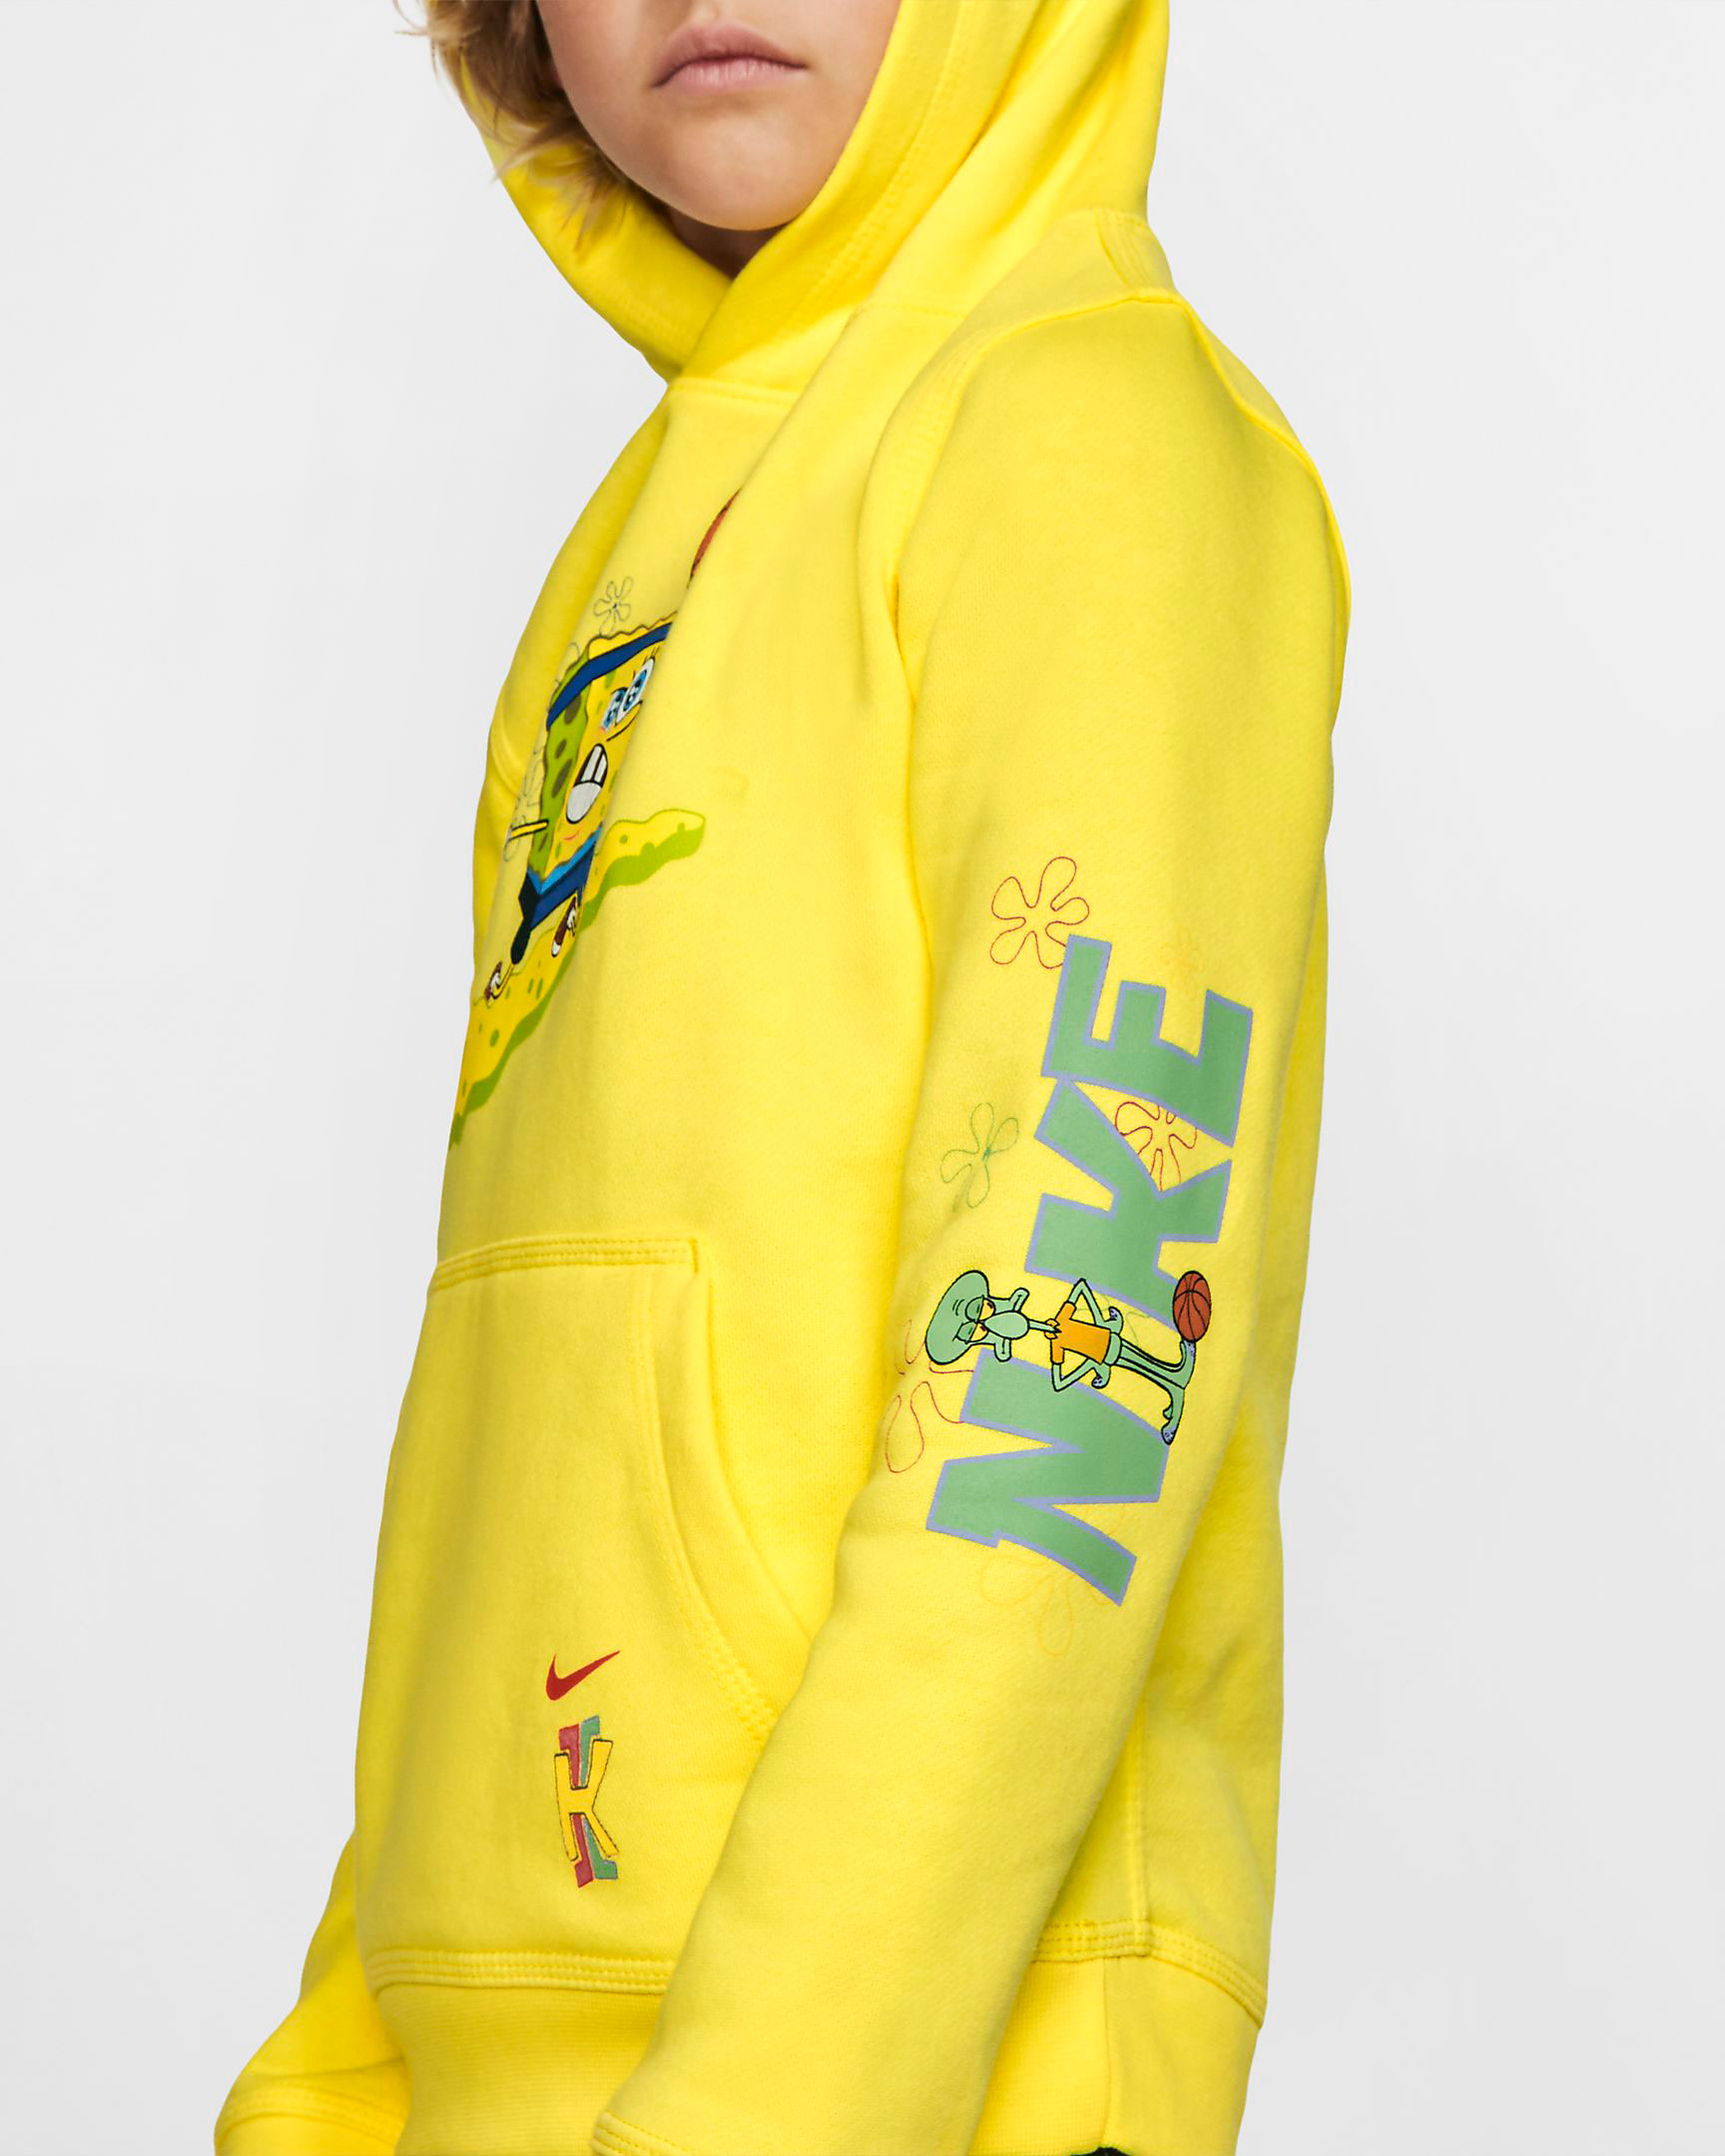 nike-kyrie-spongebob-kids-hoodie-yellow-3